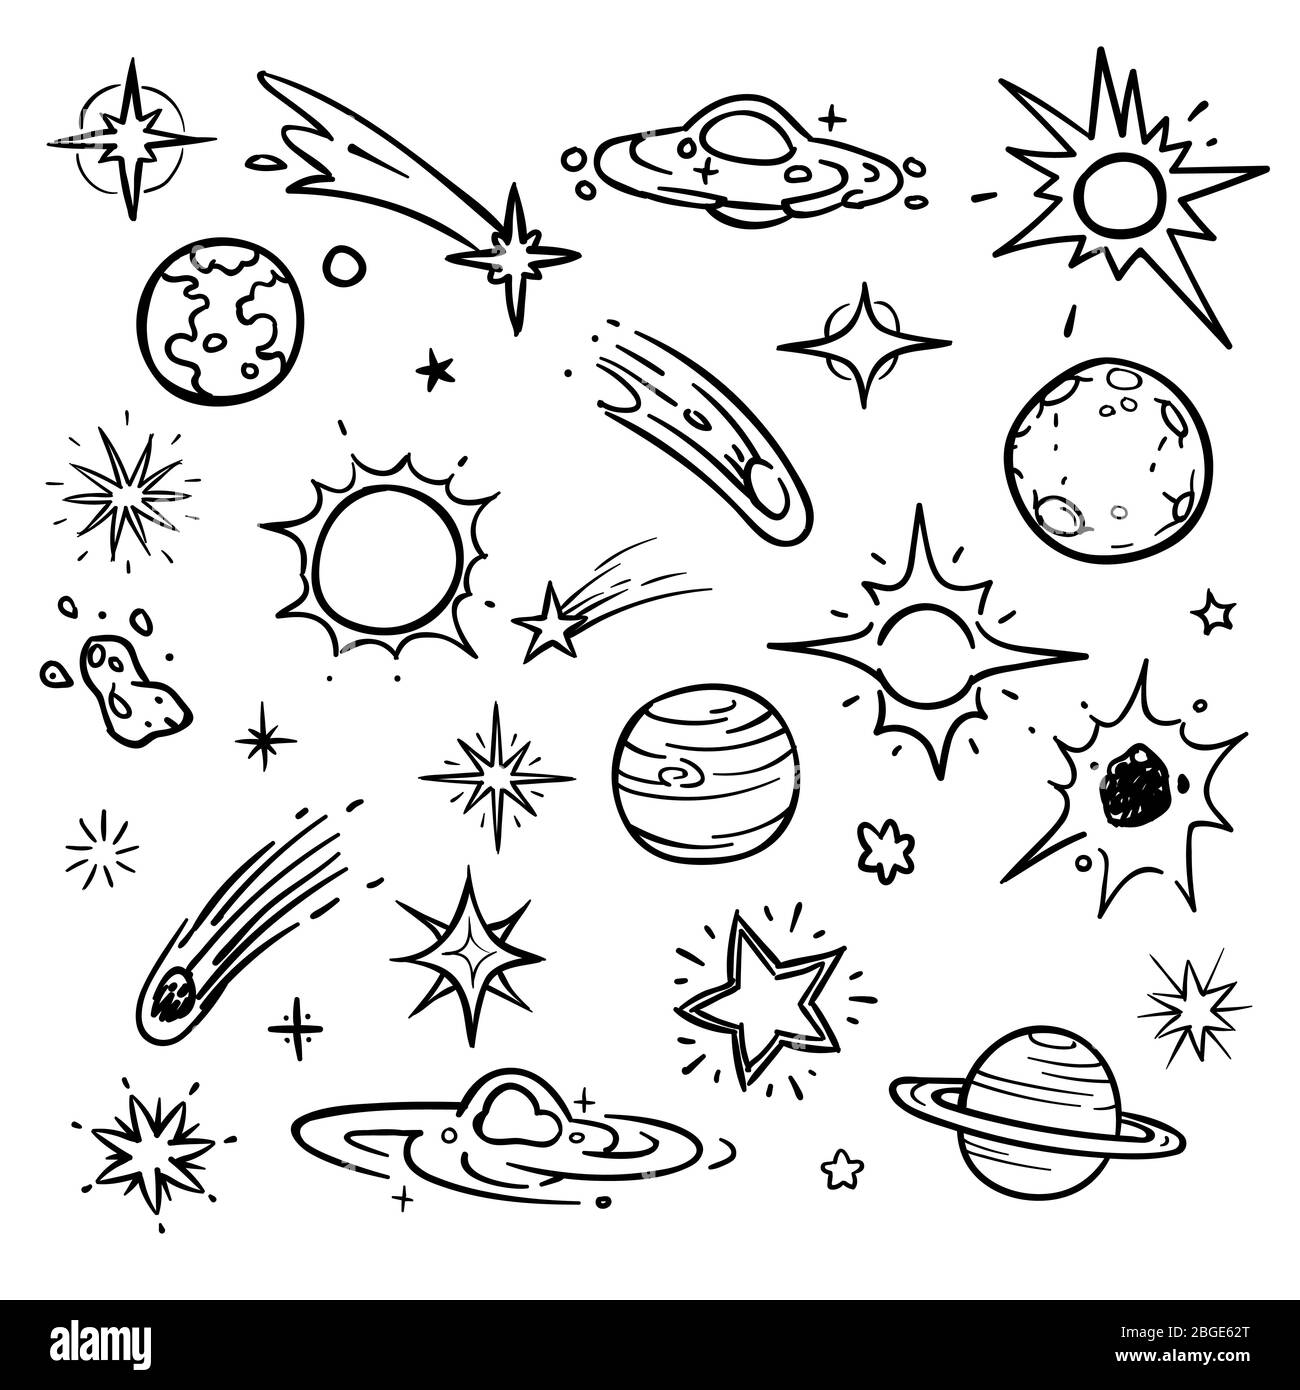 Vektorelemente im Raum Doodle. Handgezeichnete Sterne, Kometen, Planeten und Mond am Himmel. Astronomie und Planet, Weltraum und Wissenschaft Illustration Stock Vektor